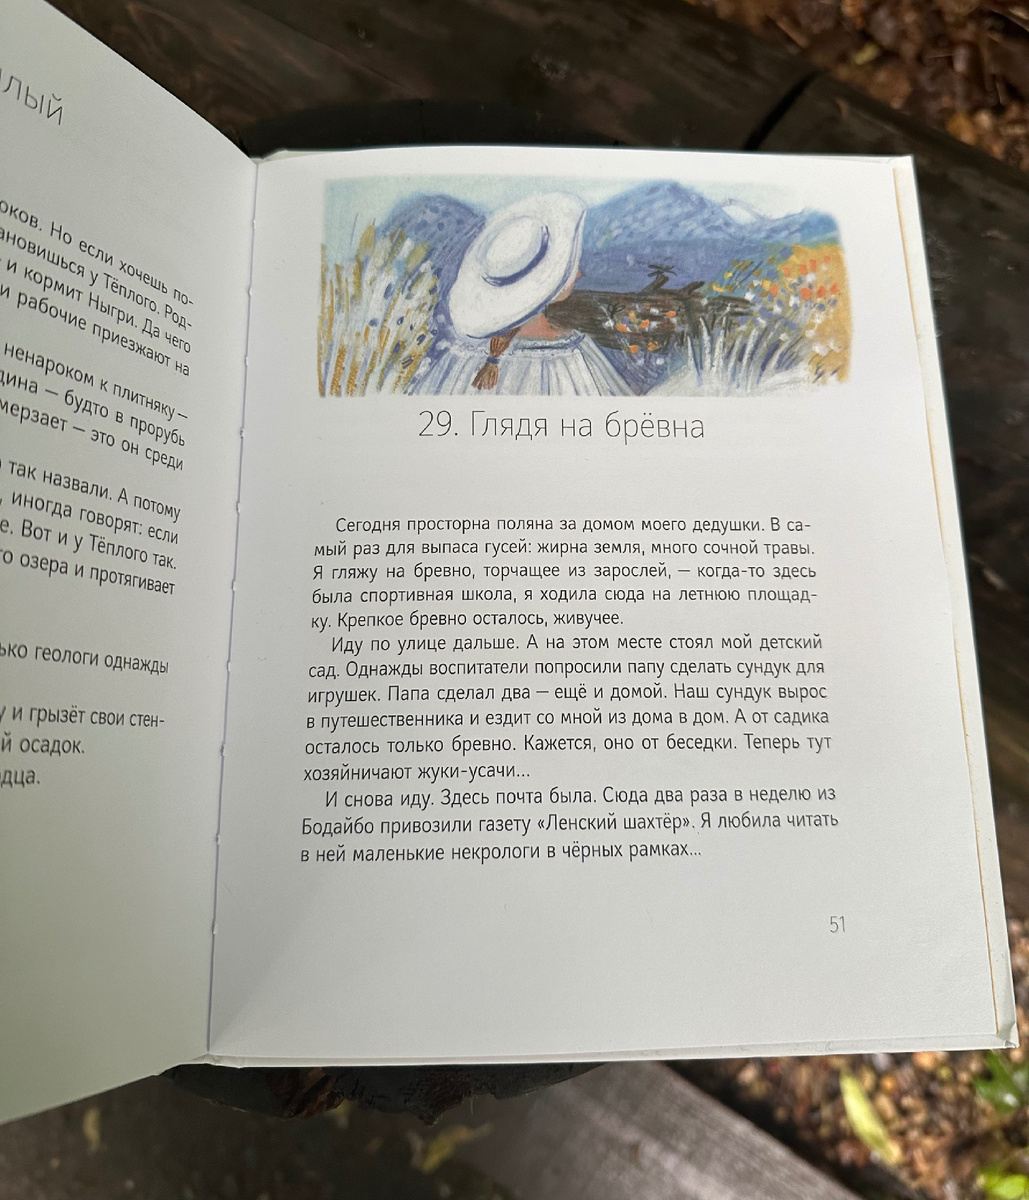 «Кедровый слоник» Анны Анисимовой - это красивая проза для детей и взрослых.  Вот одна из моих любимых цитат 😌 «А речка наша вечно угрюмая.-2